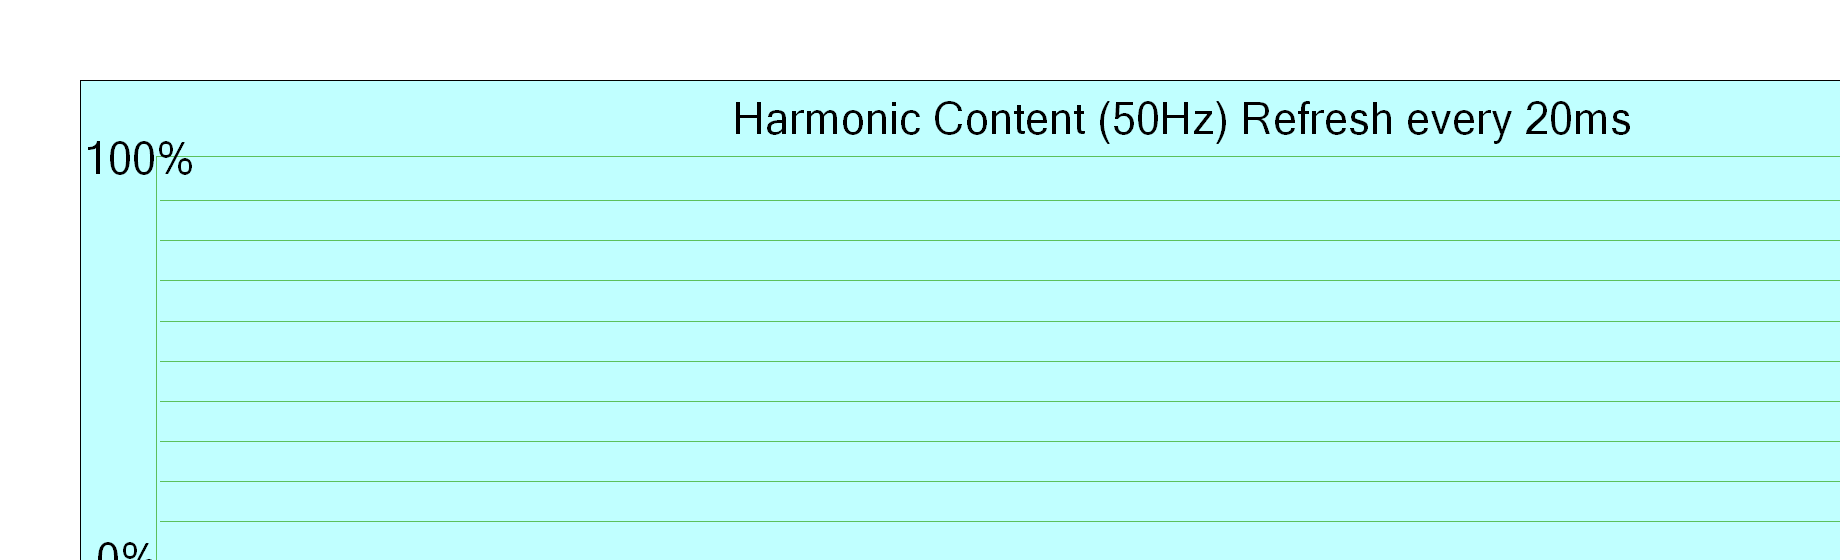 Harmonic content 50Hz